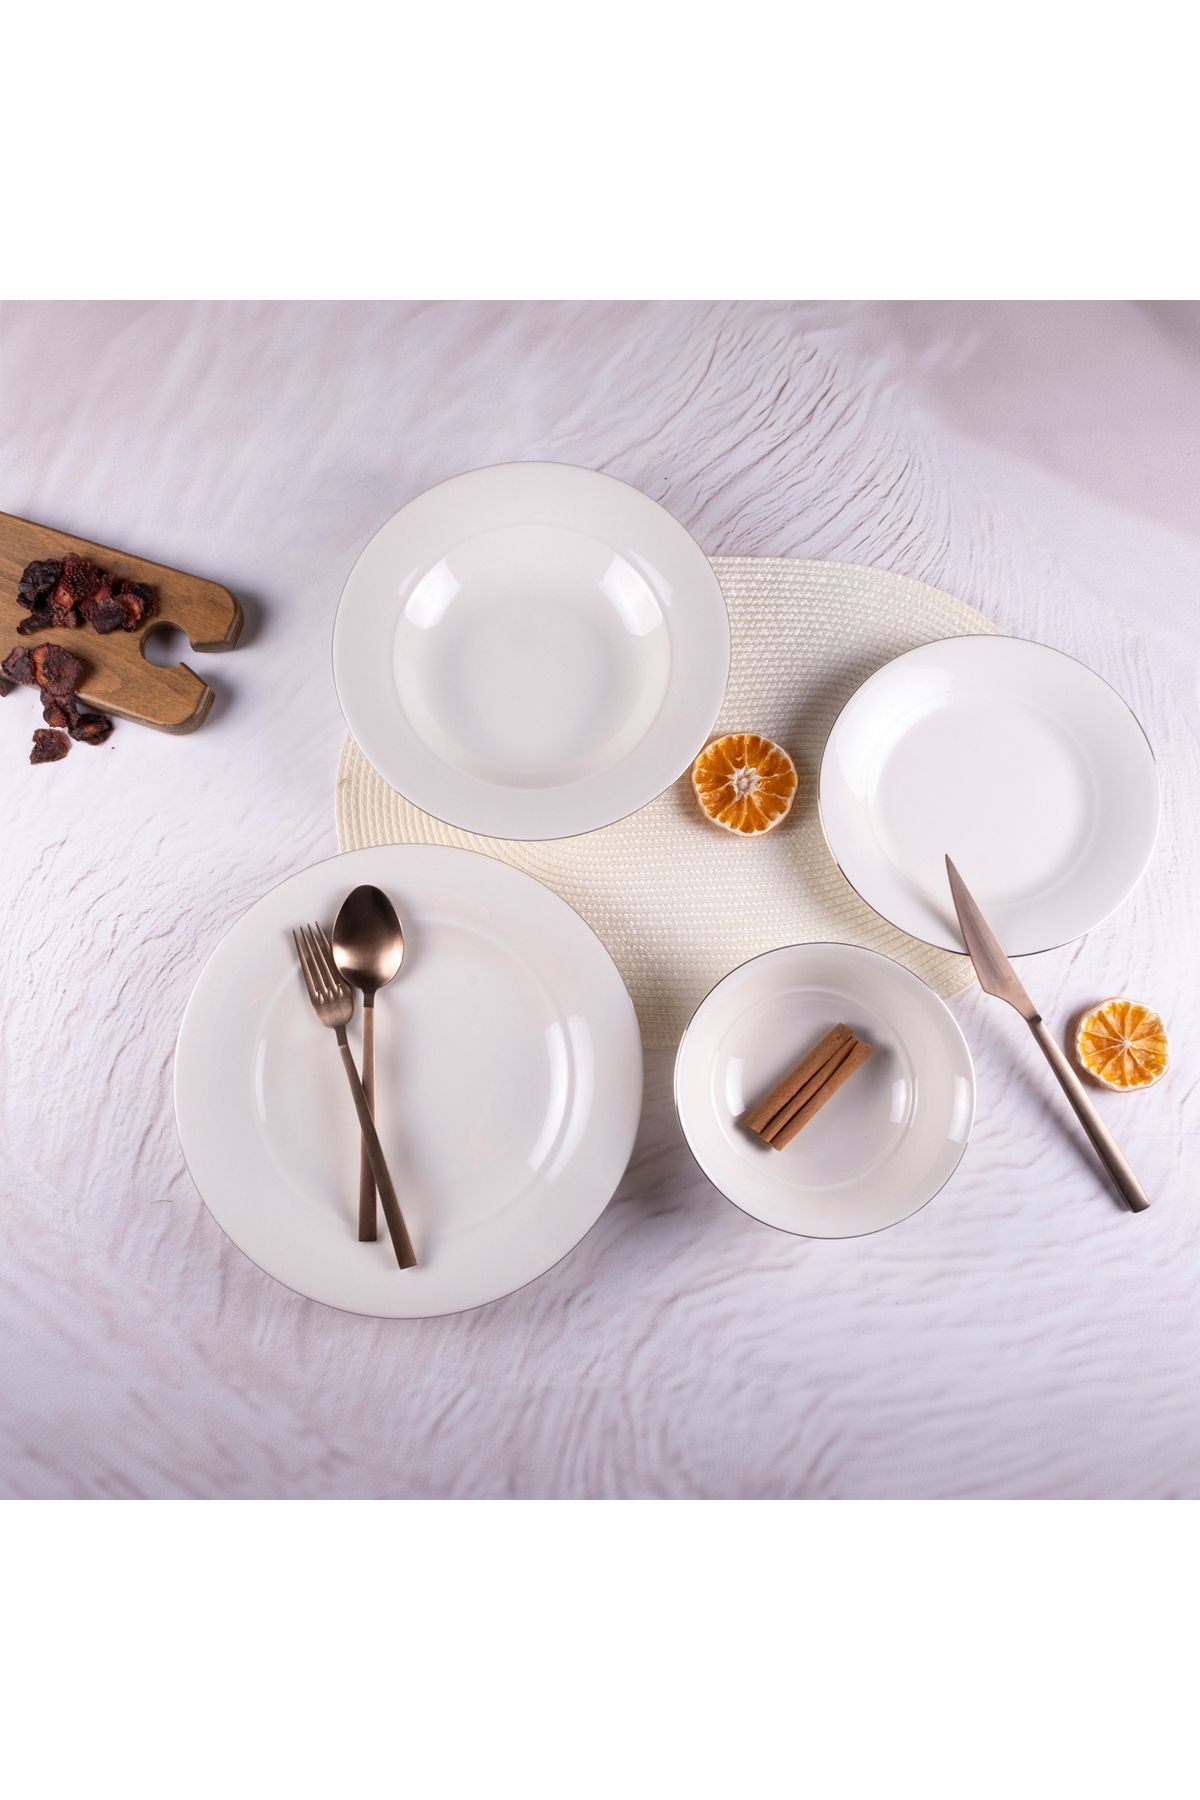 Tulü Porselen Tulu Platin 6 Kişilik 24 Parça Yemek Takımı